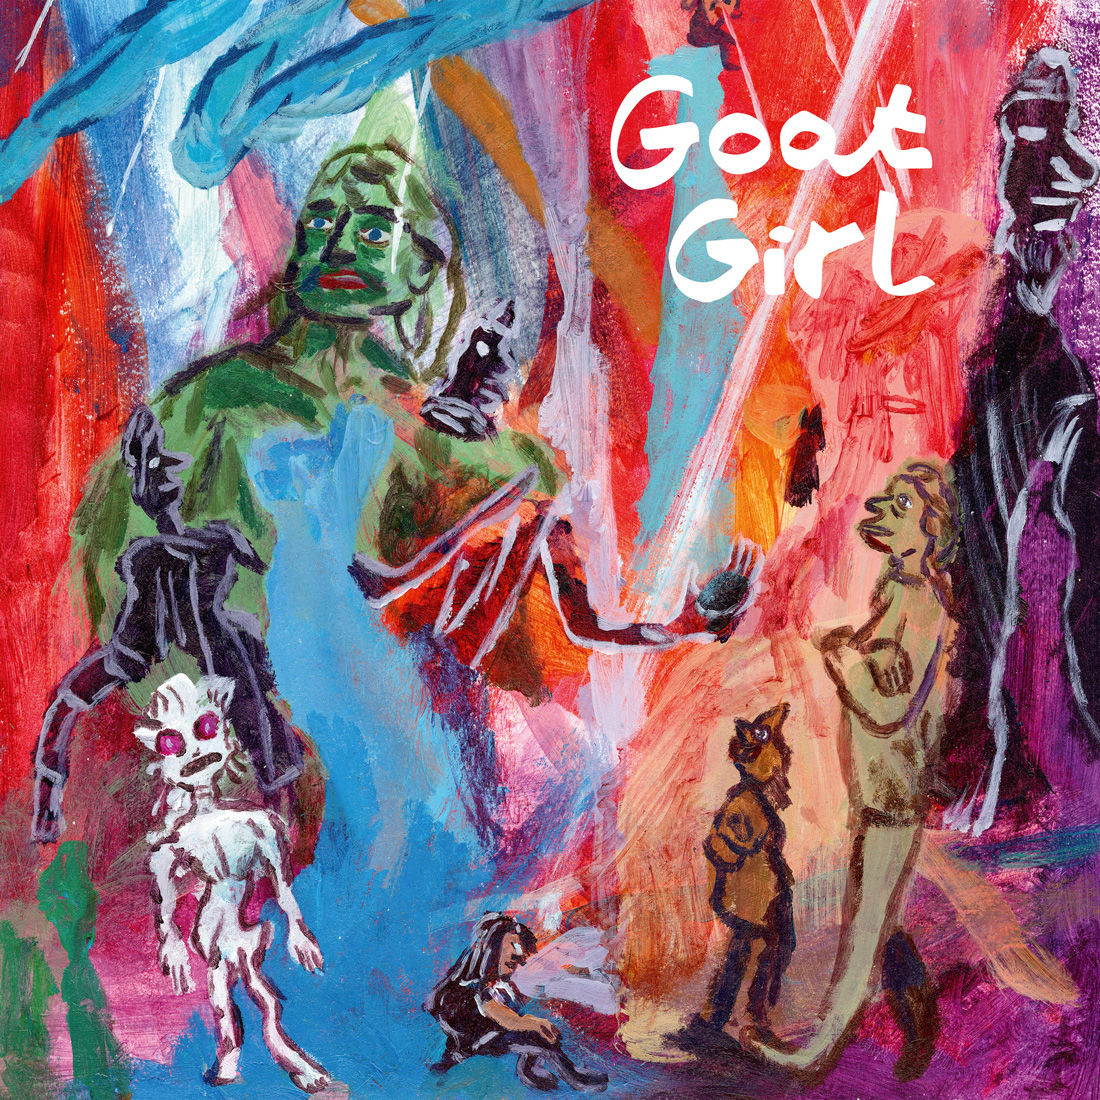 Goat Girl - Goat Girl: CD